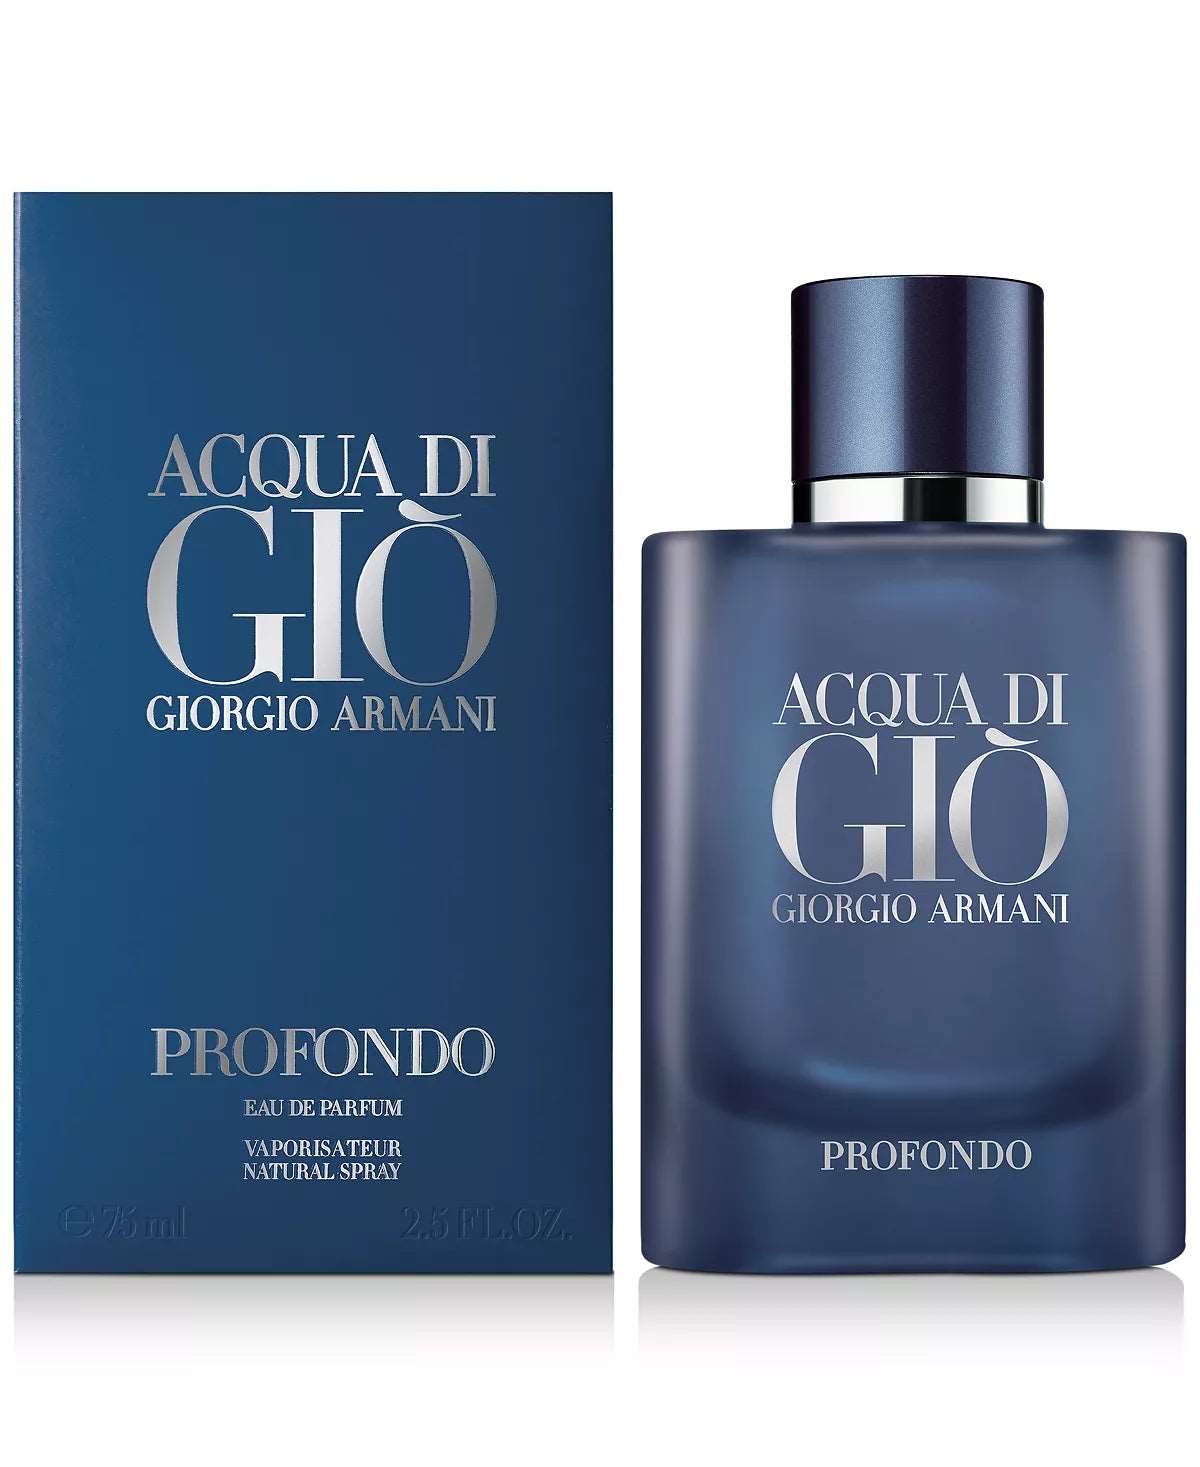 Acqua Di Gio Profondo Giorgio Armani Eau de Parfum 2.5 fl oz